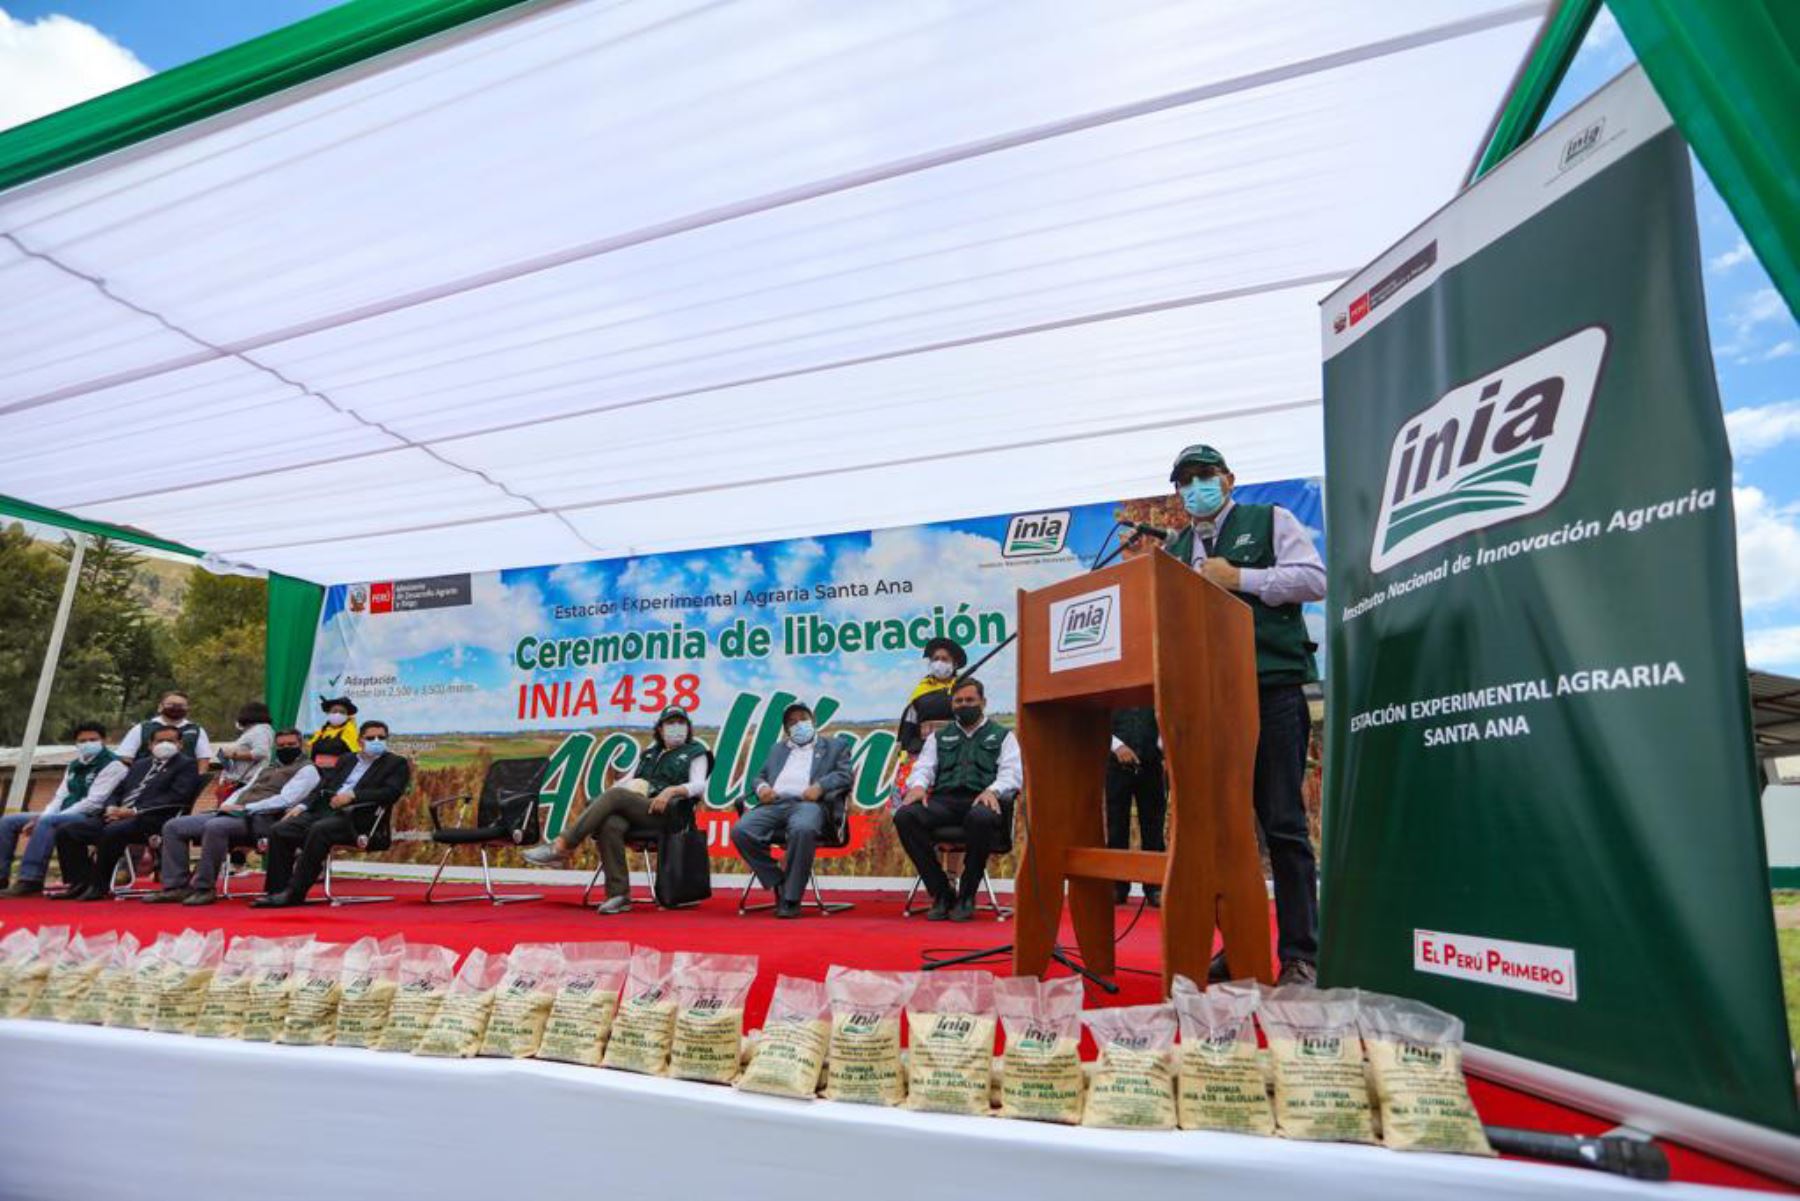 El Ministerio de Desarrollo Agrario y Riego (Midagri) lanzó, en la región Junín, el Programa de Semillas de Calidad y Ganadería Nacional, con la finalidad de potenciar la calidad de la producción agropecuaria de más de 160,000 pequeños agricultores. Foto: Midagri